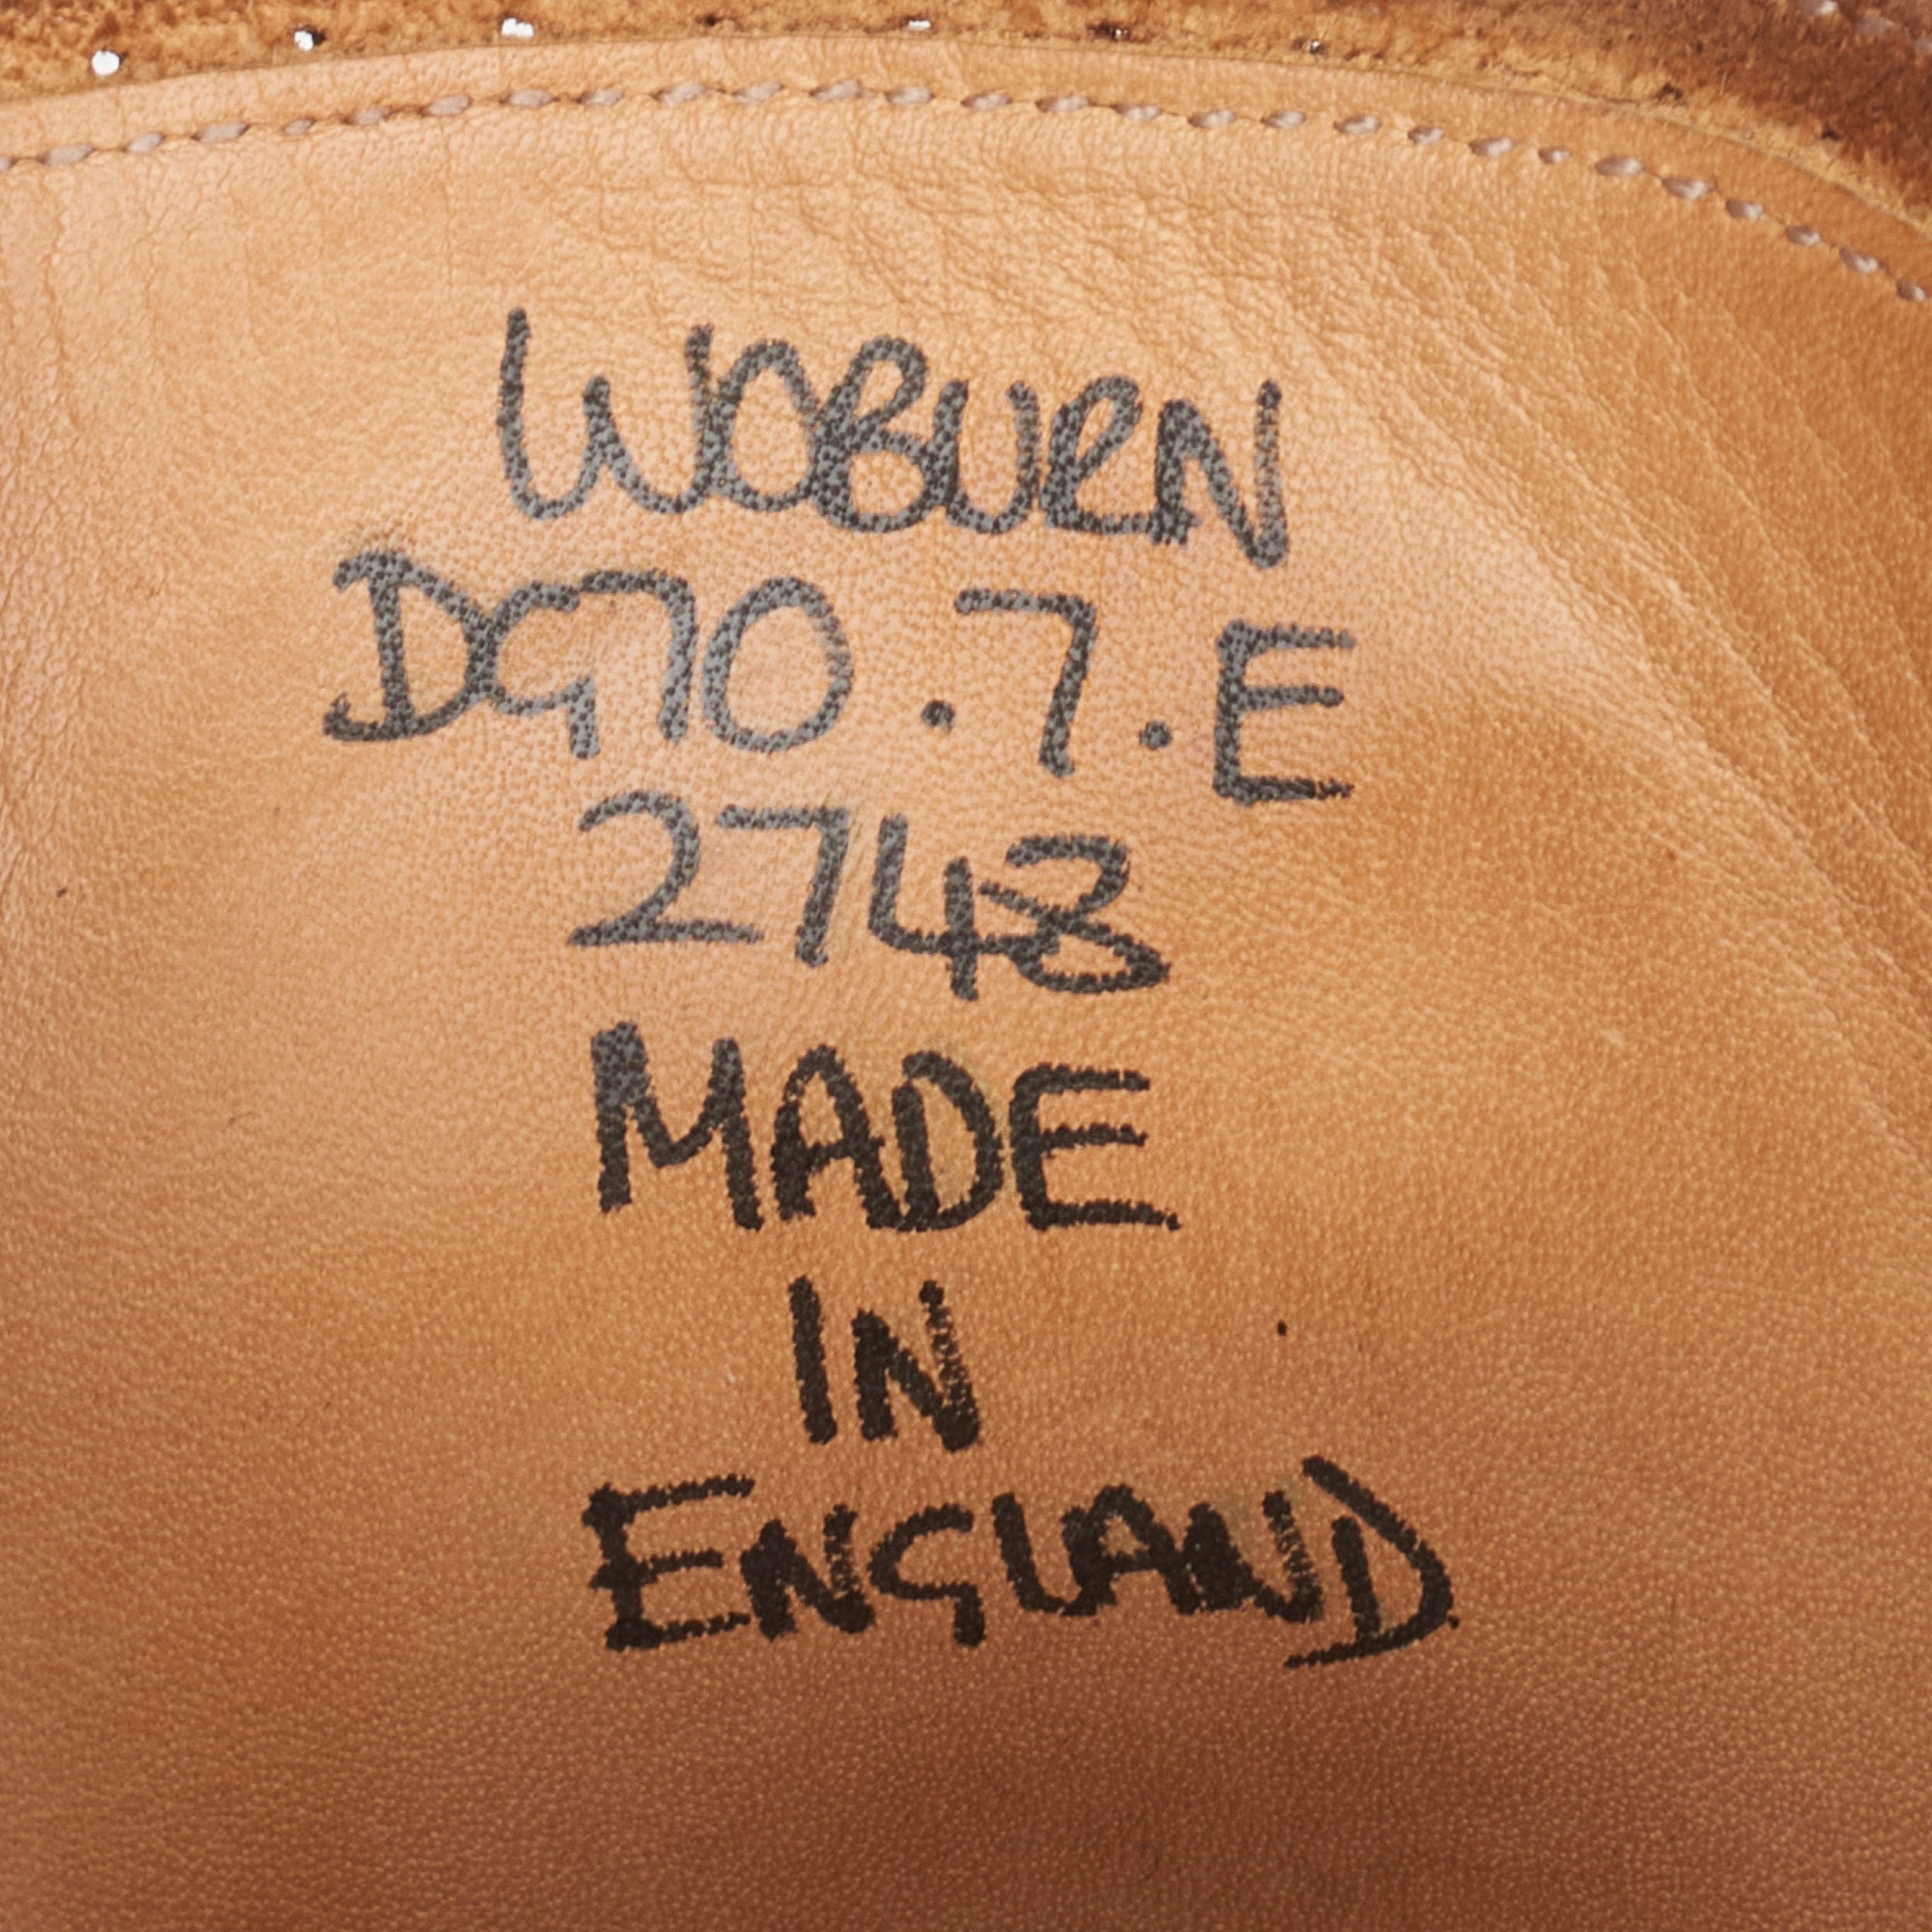 GAZIANO & GIRLING "Woburn" Cognac Derby Dress Shoes UK 7E US 7.5 Last DG70 GAZIANO & GIRLING